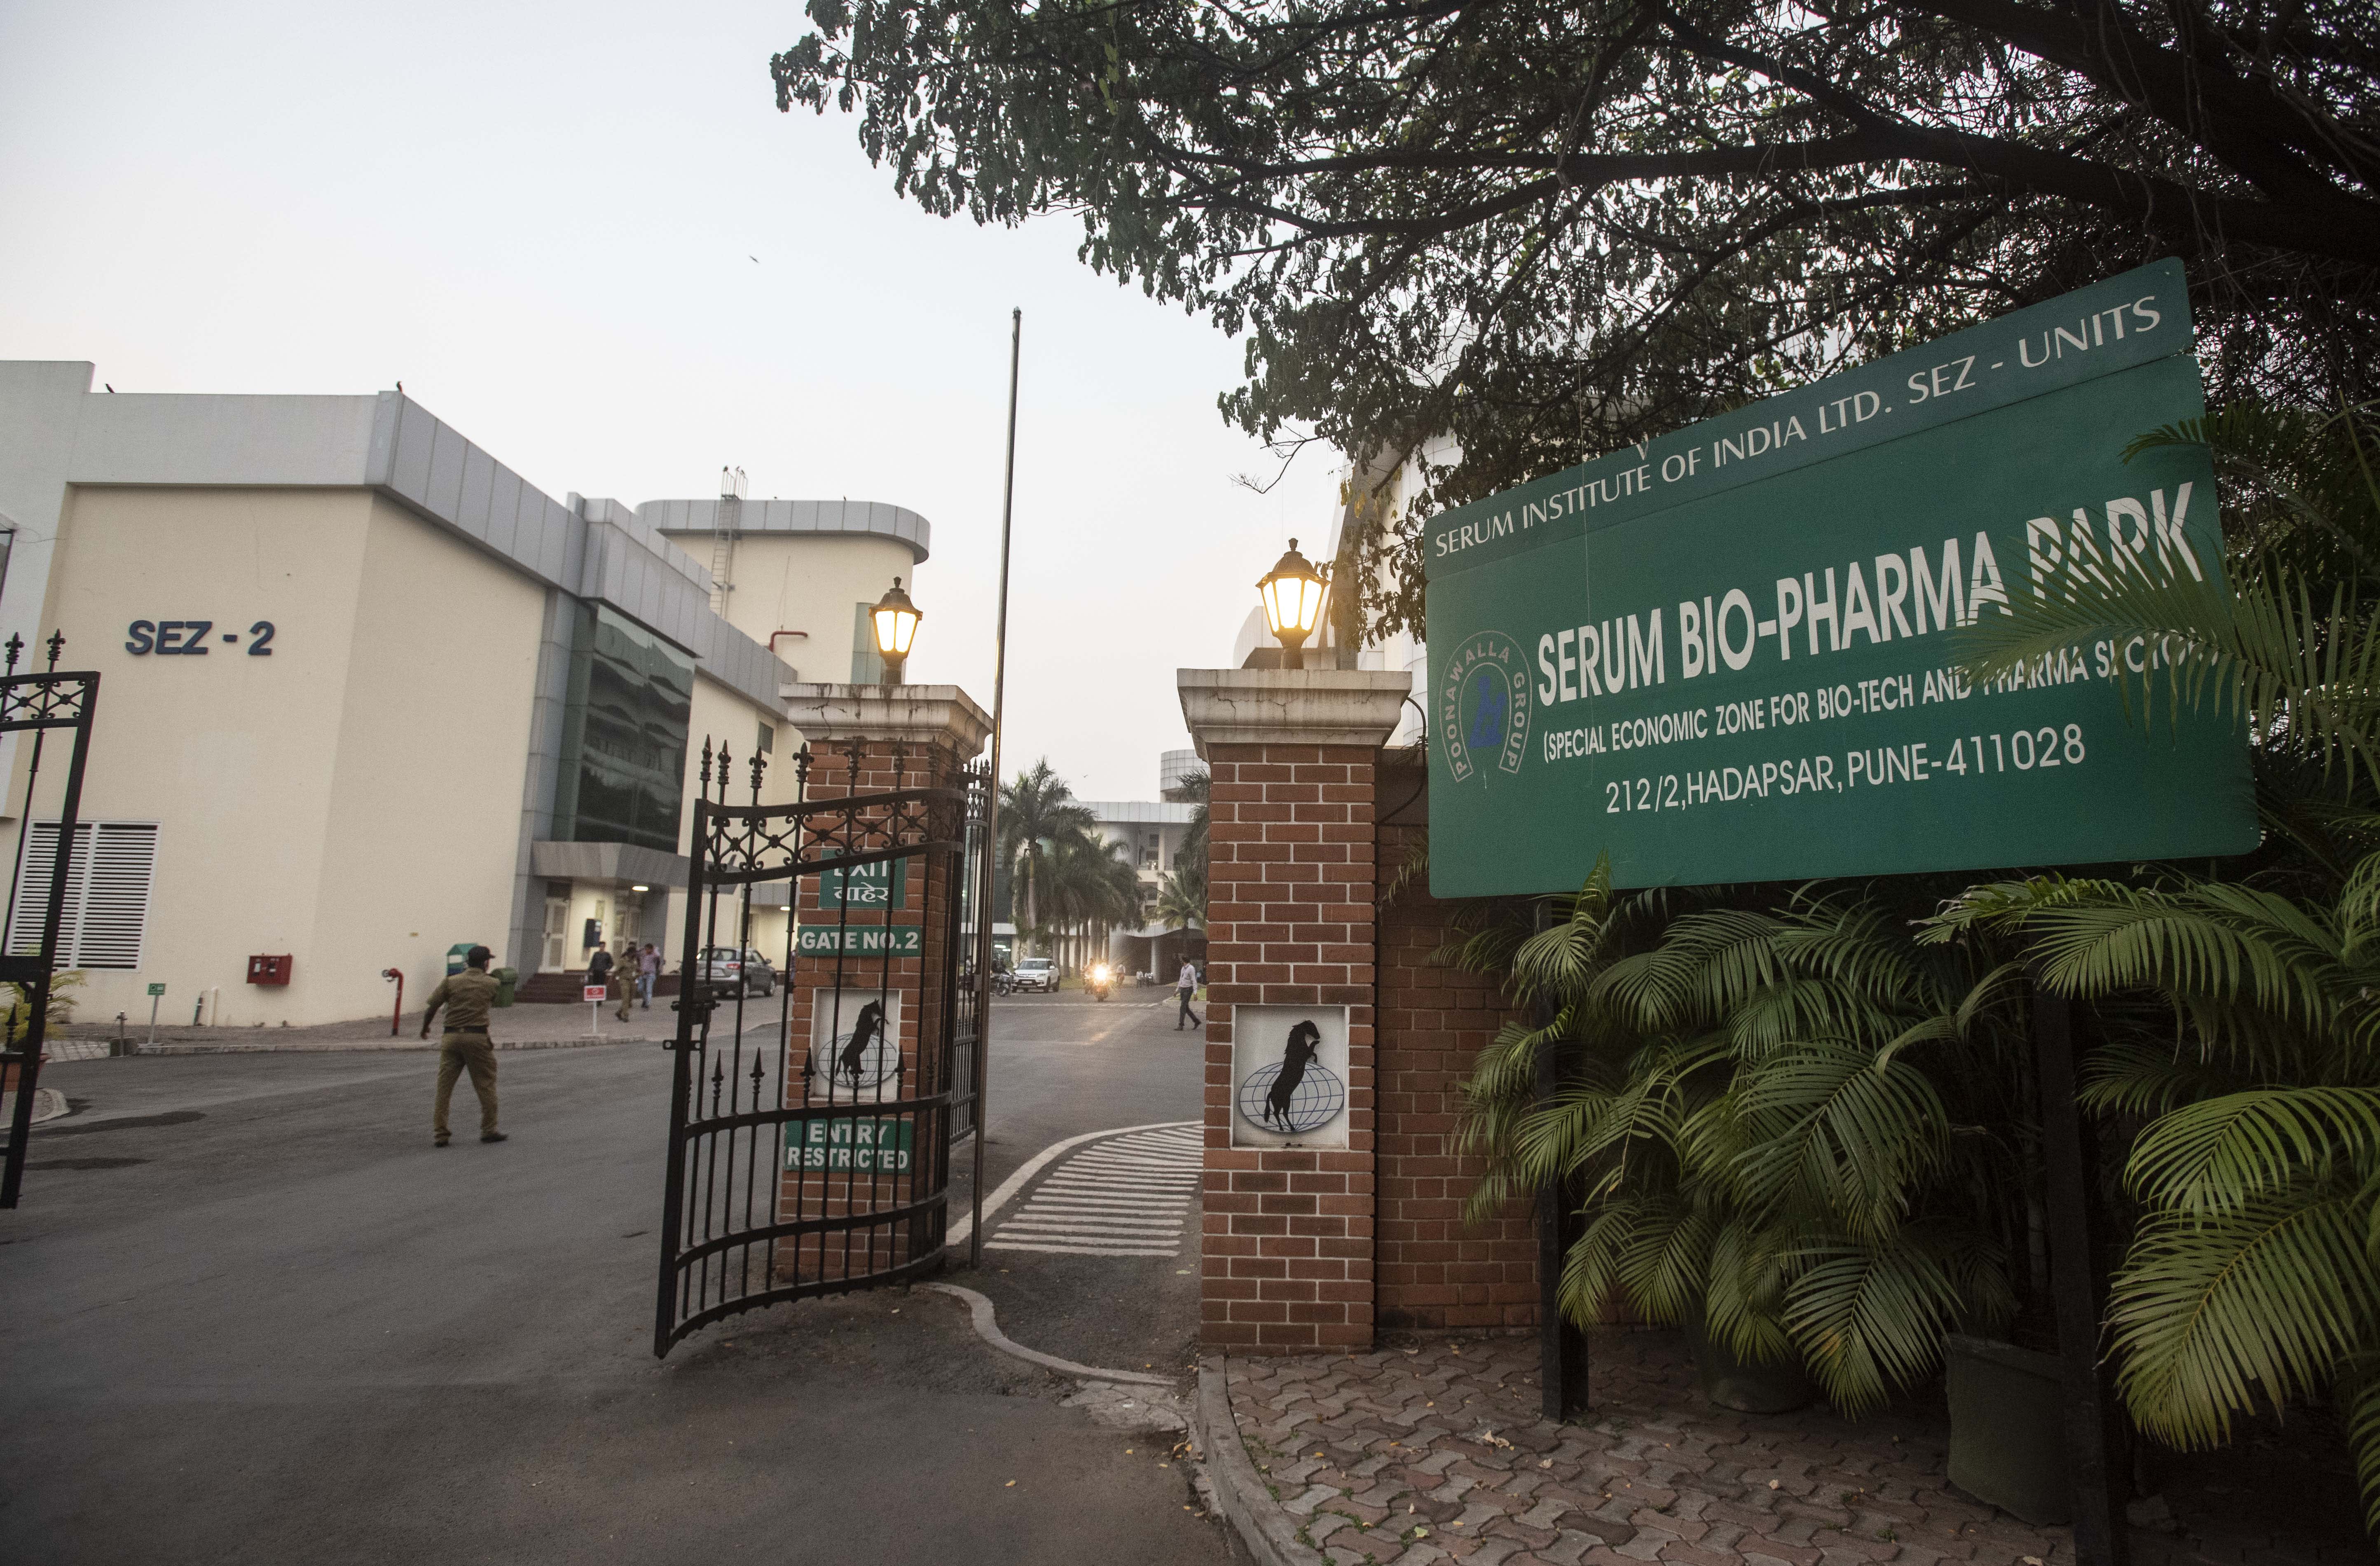 Vaccination unit of Covid-19 in India, director of the Serum Institute evaluates